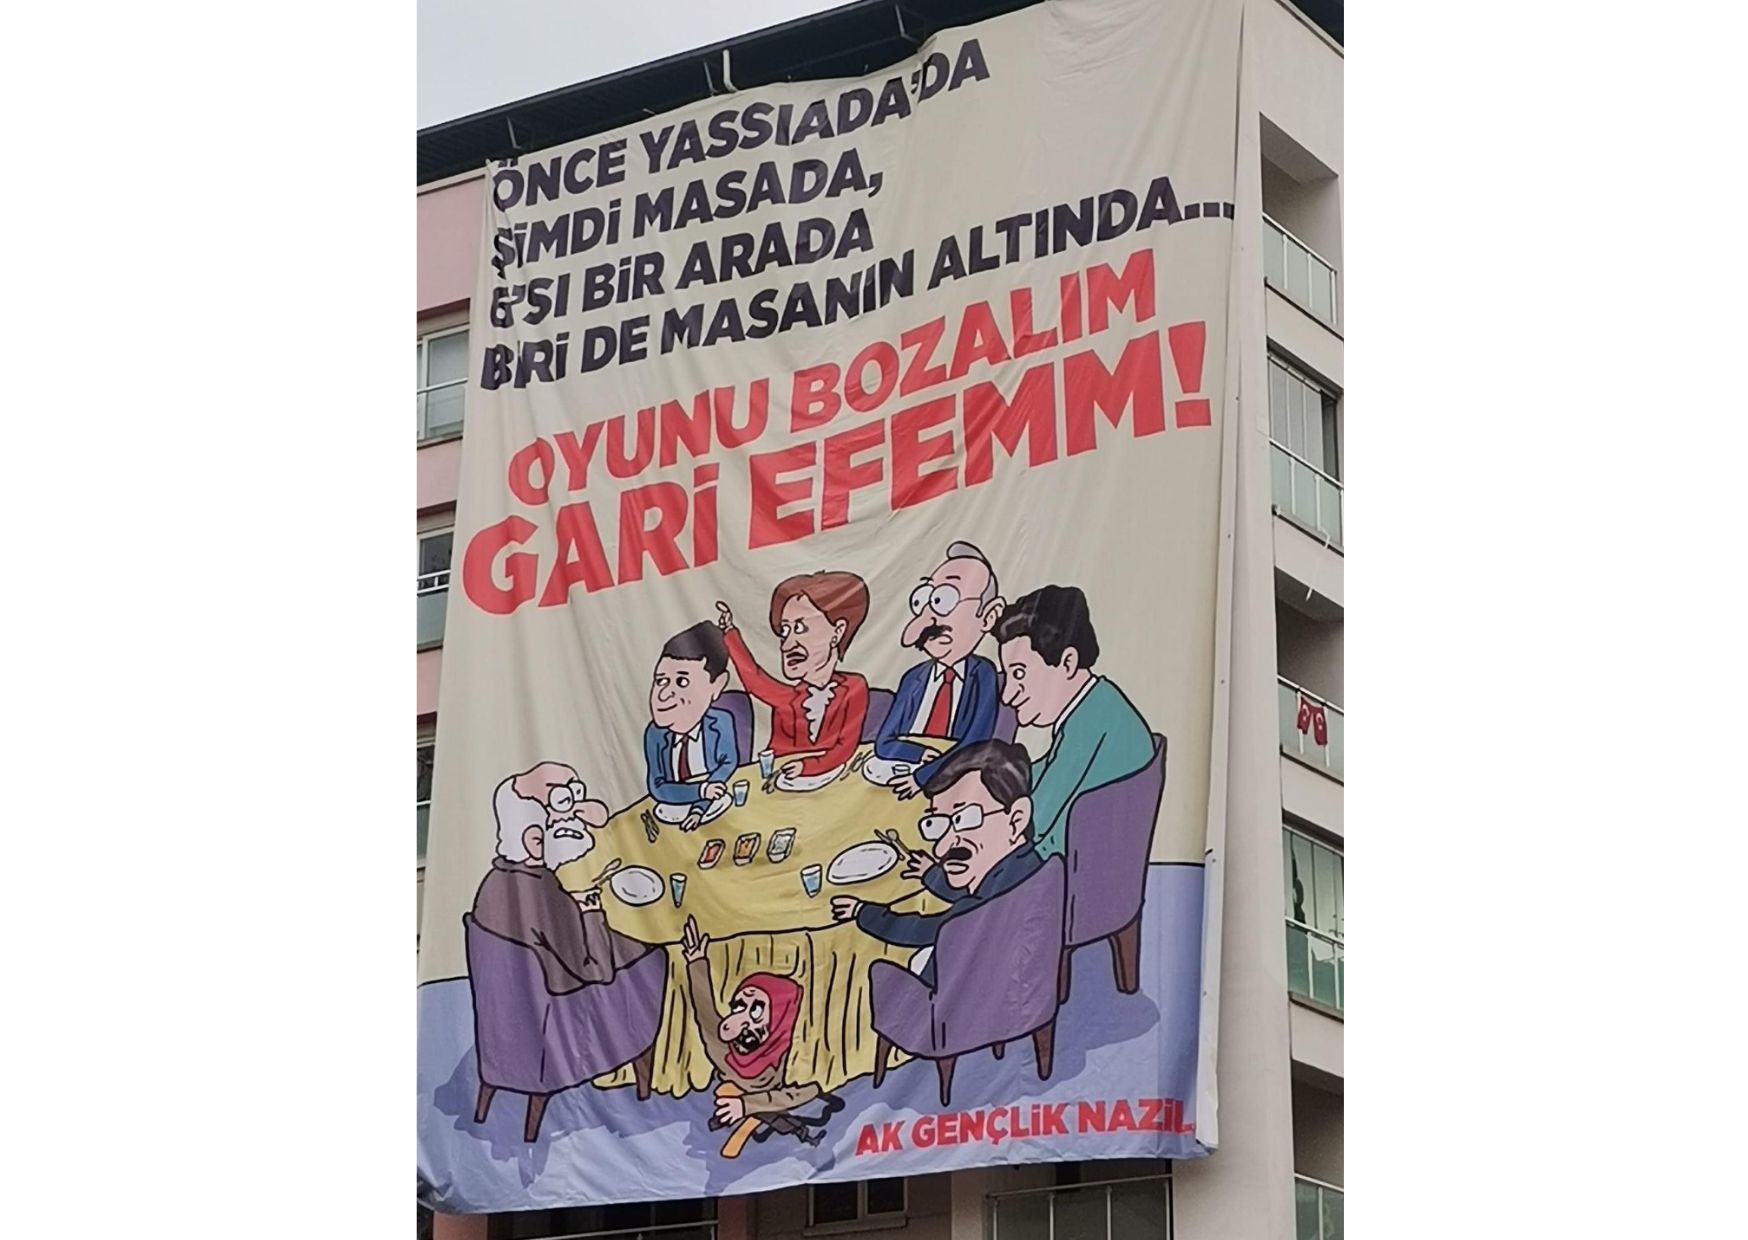 AKP'nin '6'sı bir arada biri de masanın altında' pankartına suç duyurusu